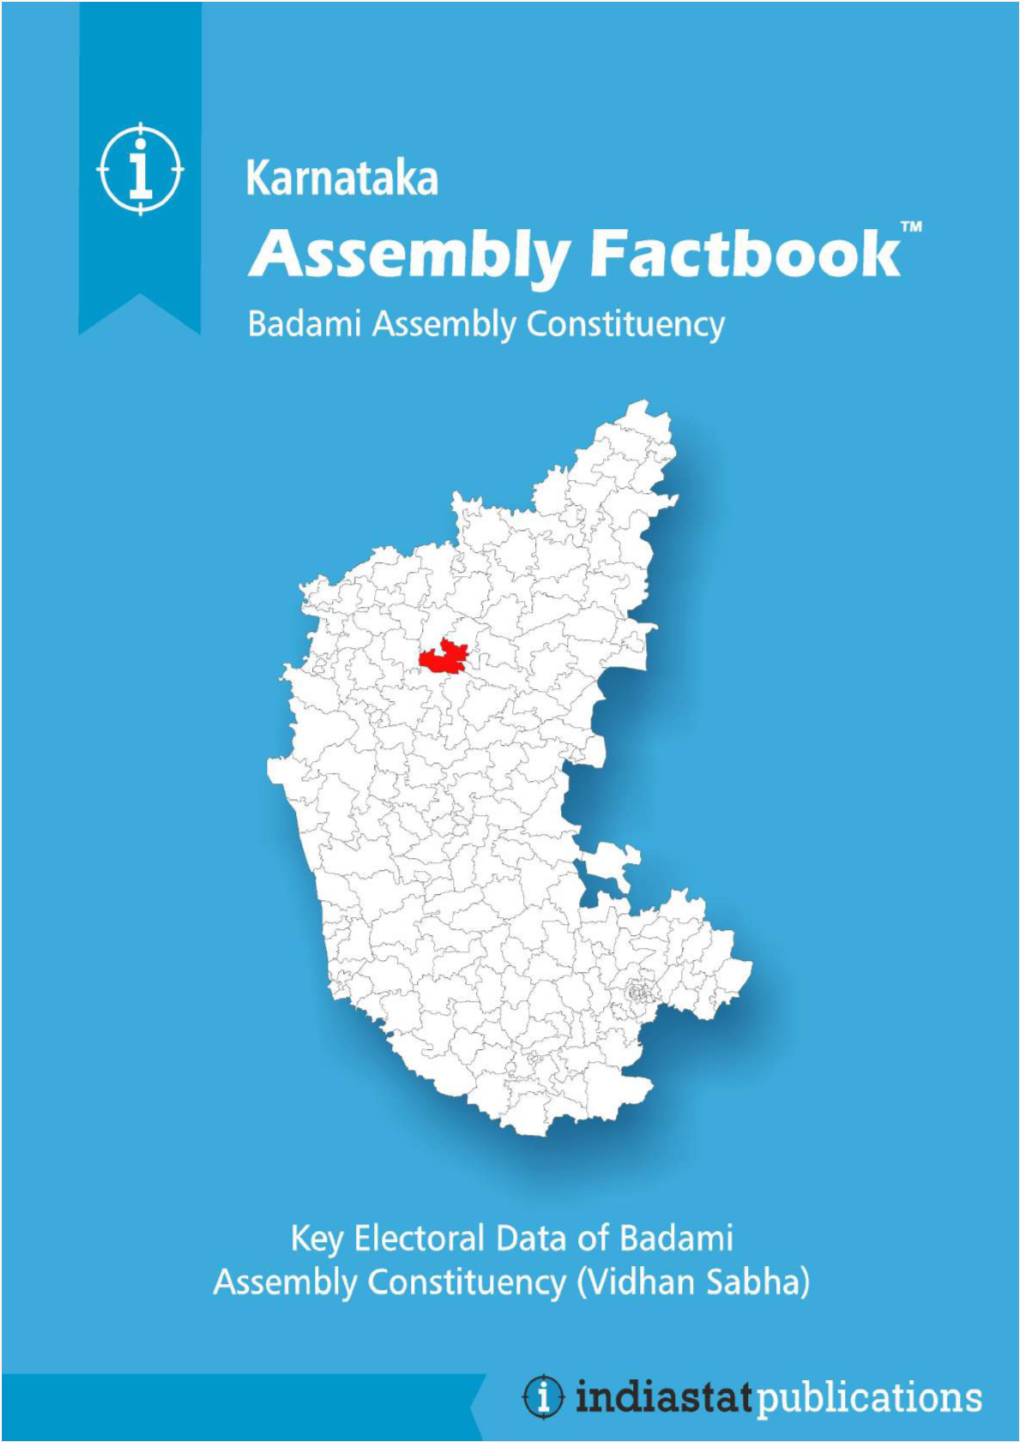 Badami Assembly Karnataka Factbook